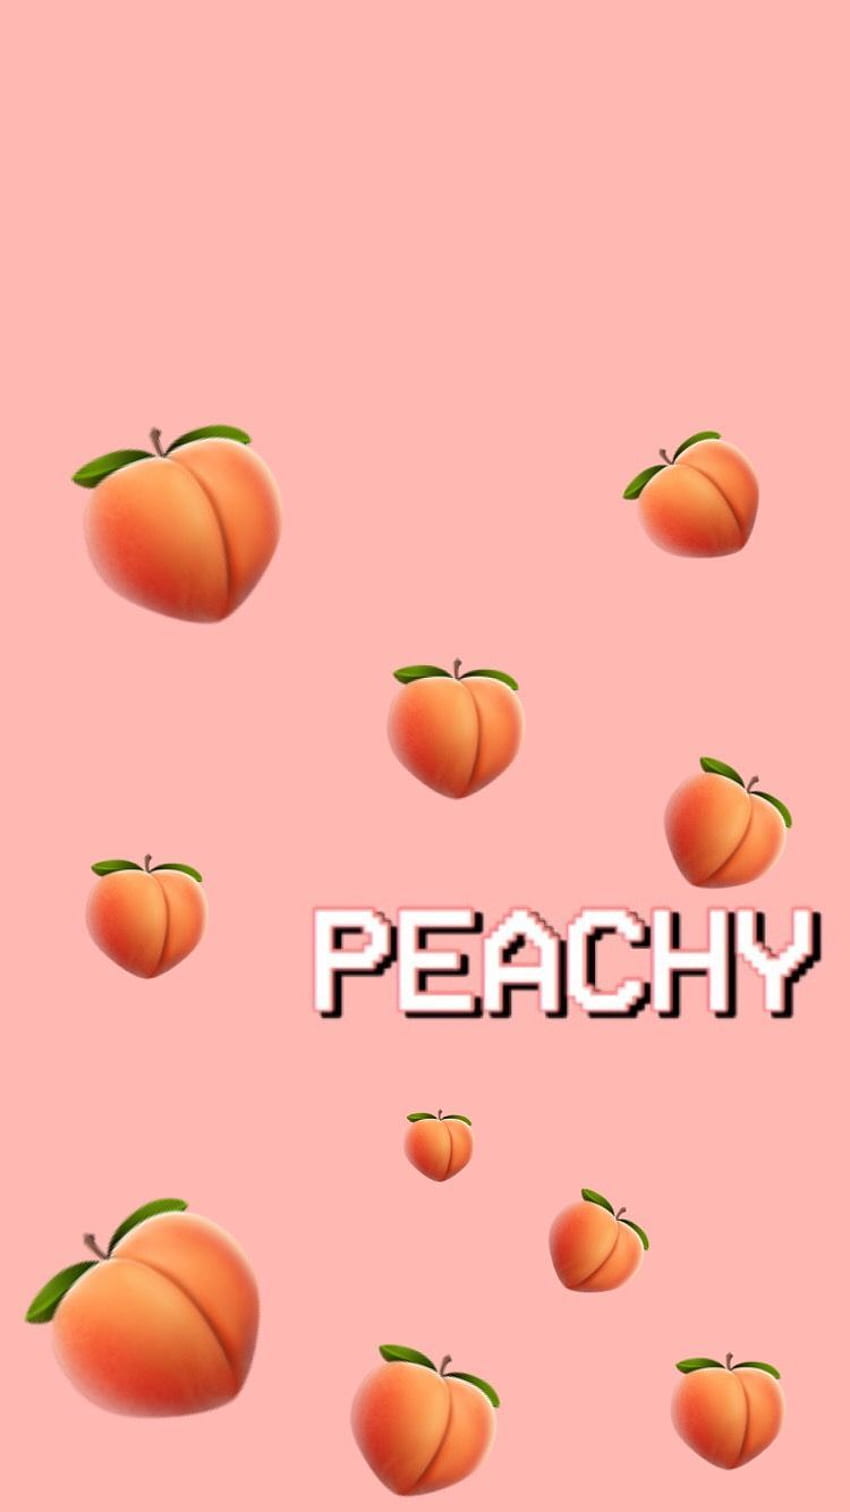 Peaches Peachy Hd Phone Wallpaper Pxfuel 5002